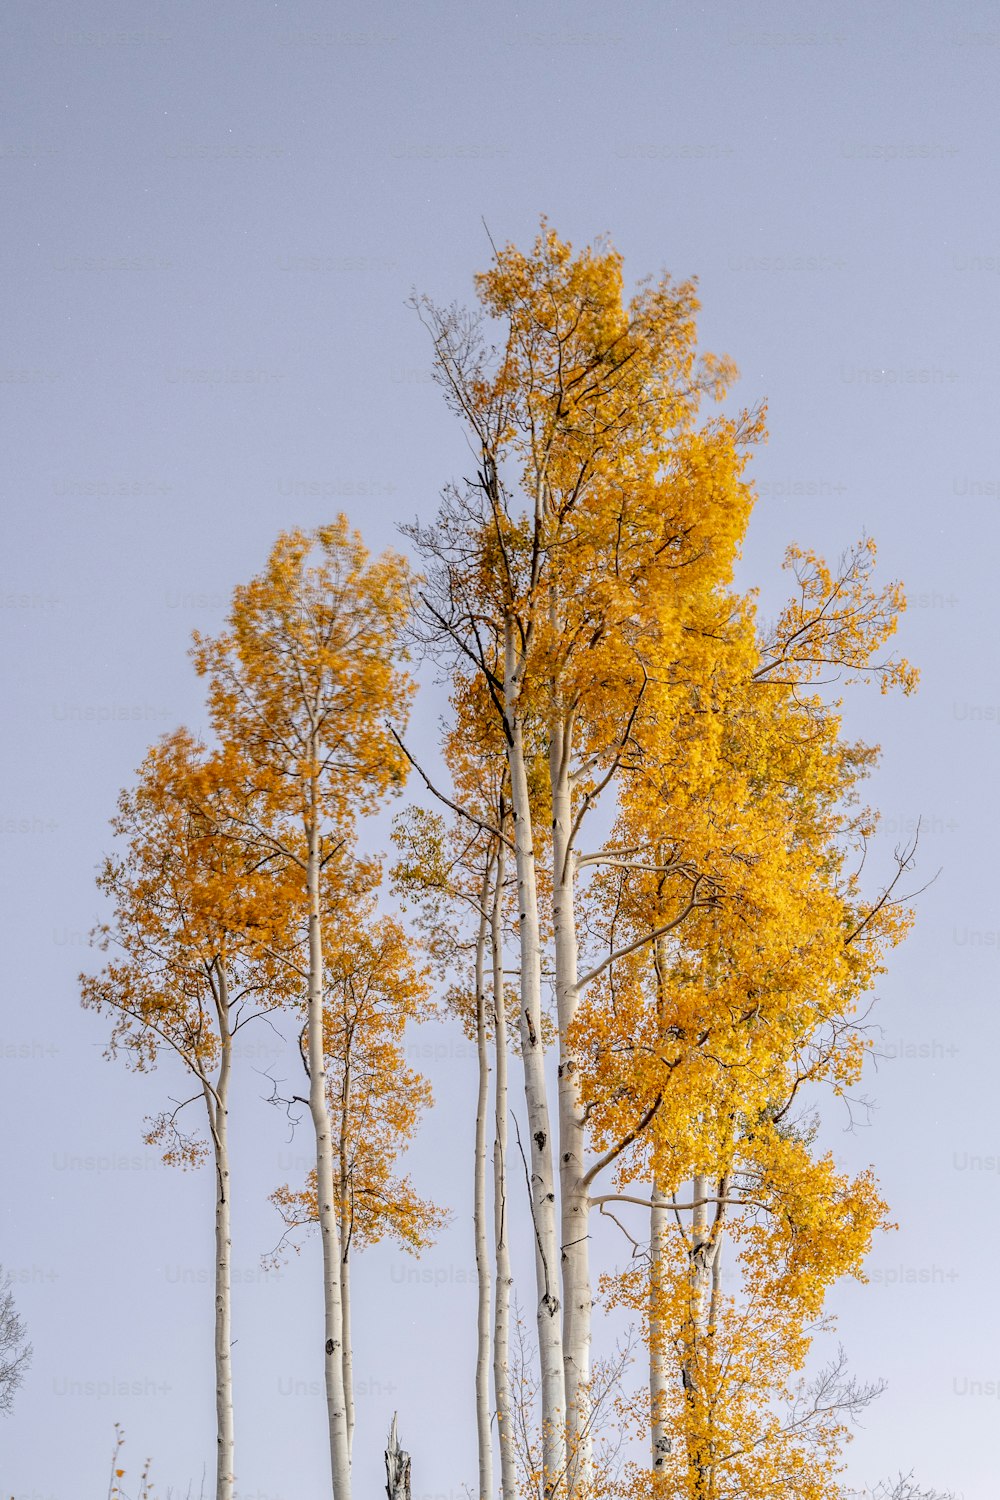 노란 잎사귀가 있는 나무 무리